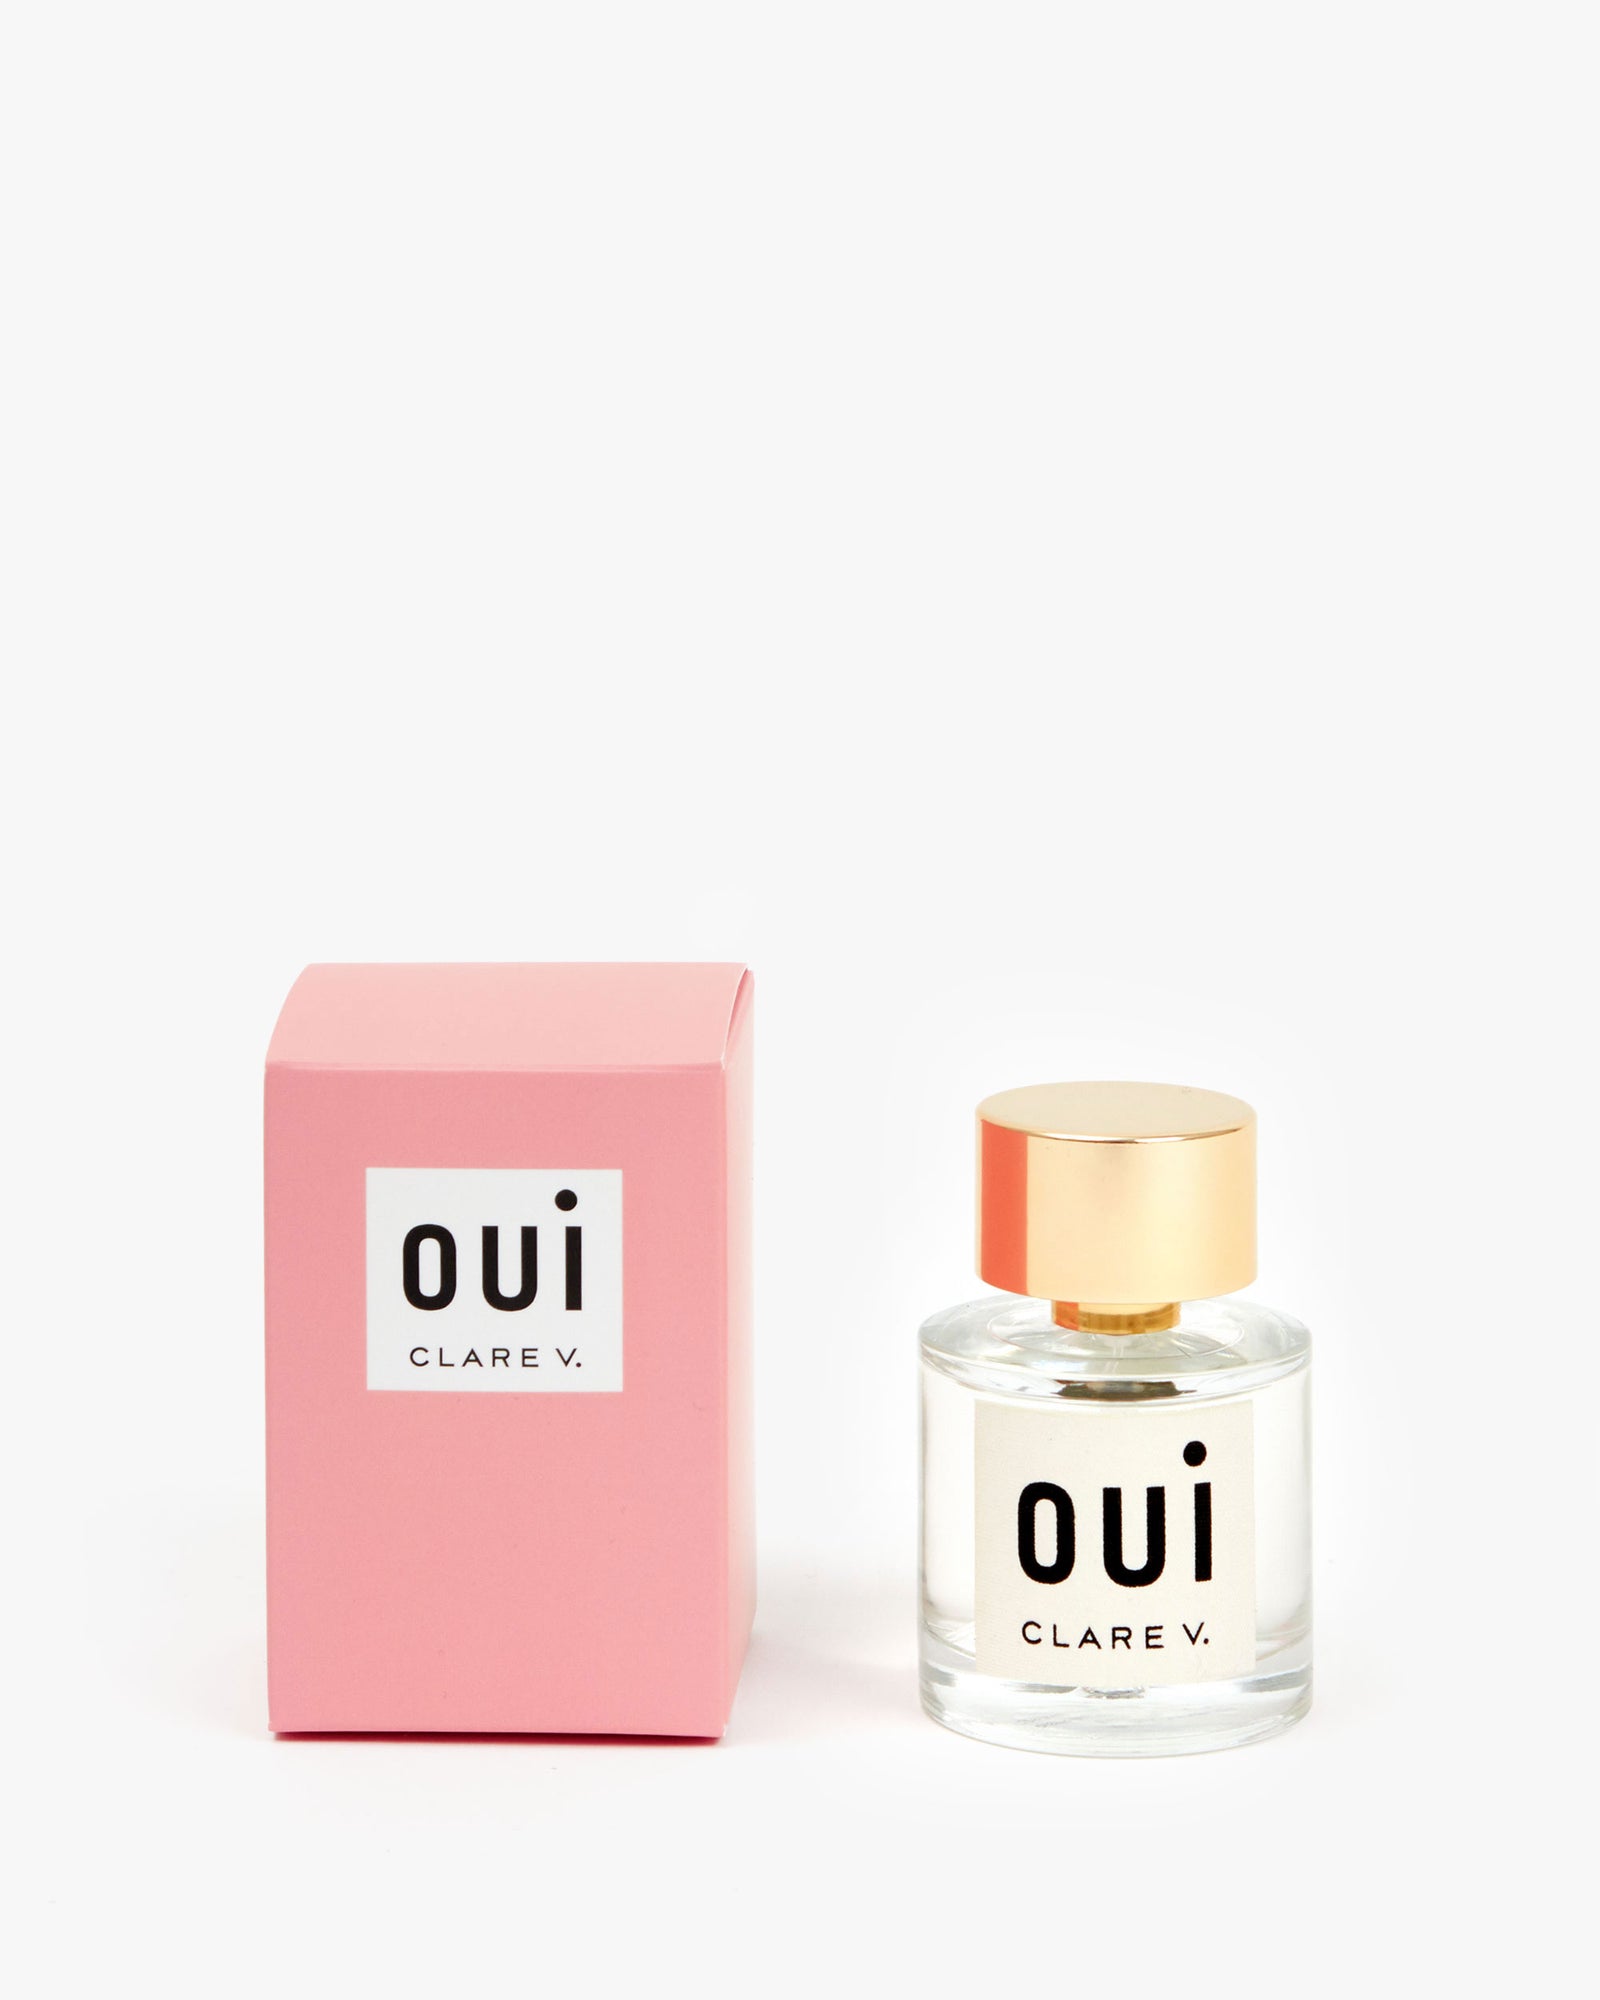 Oui Eau de Parfum next to its pink box